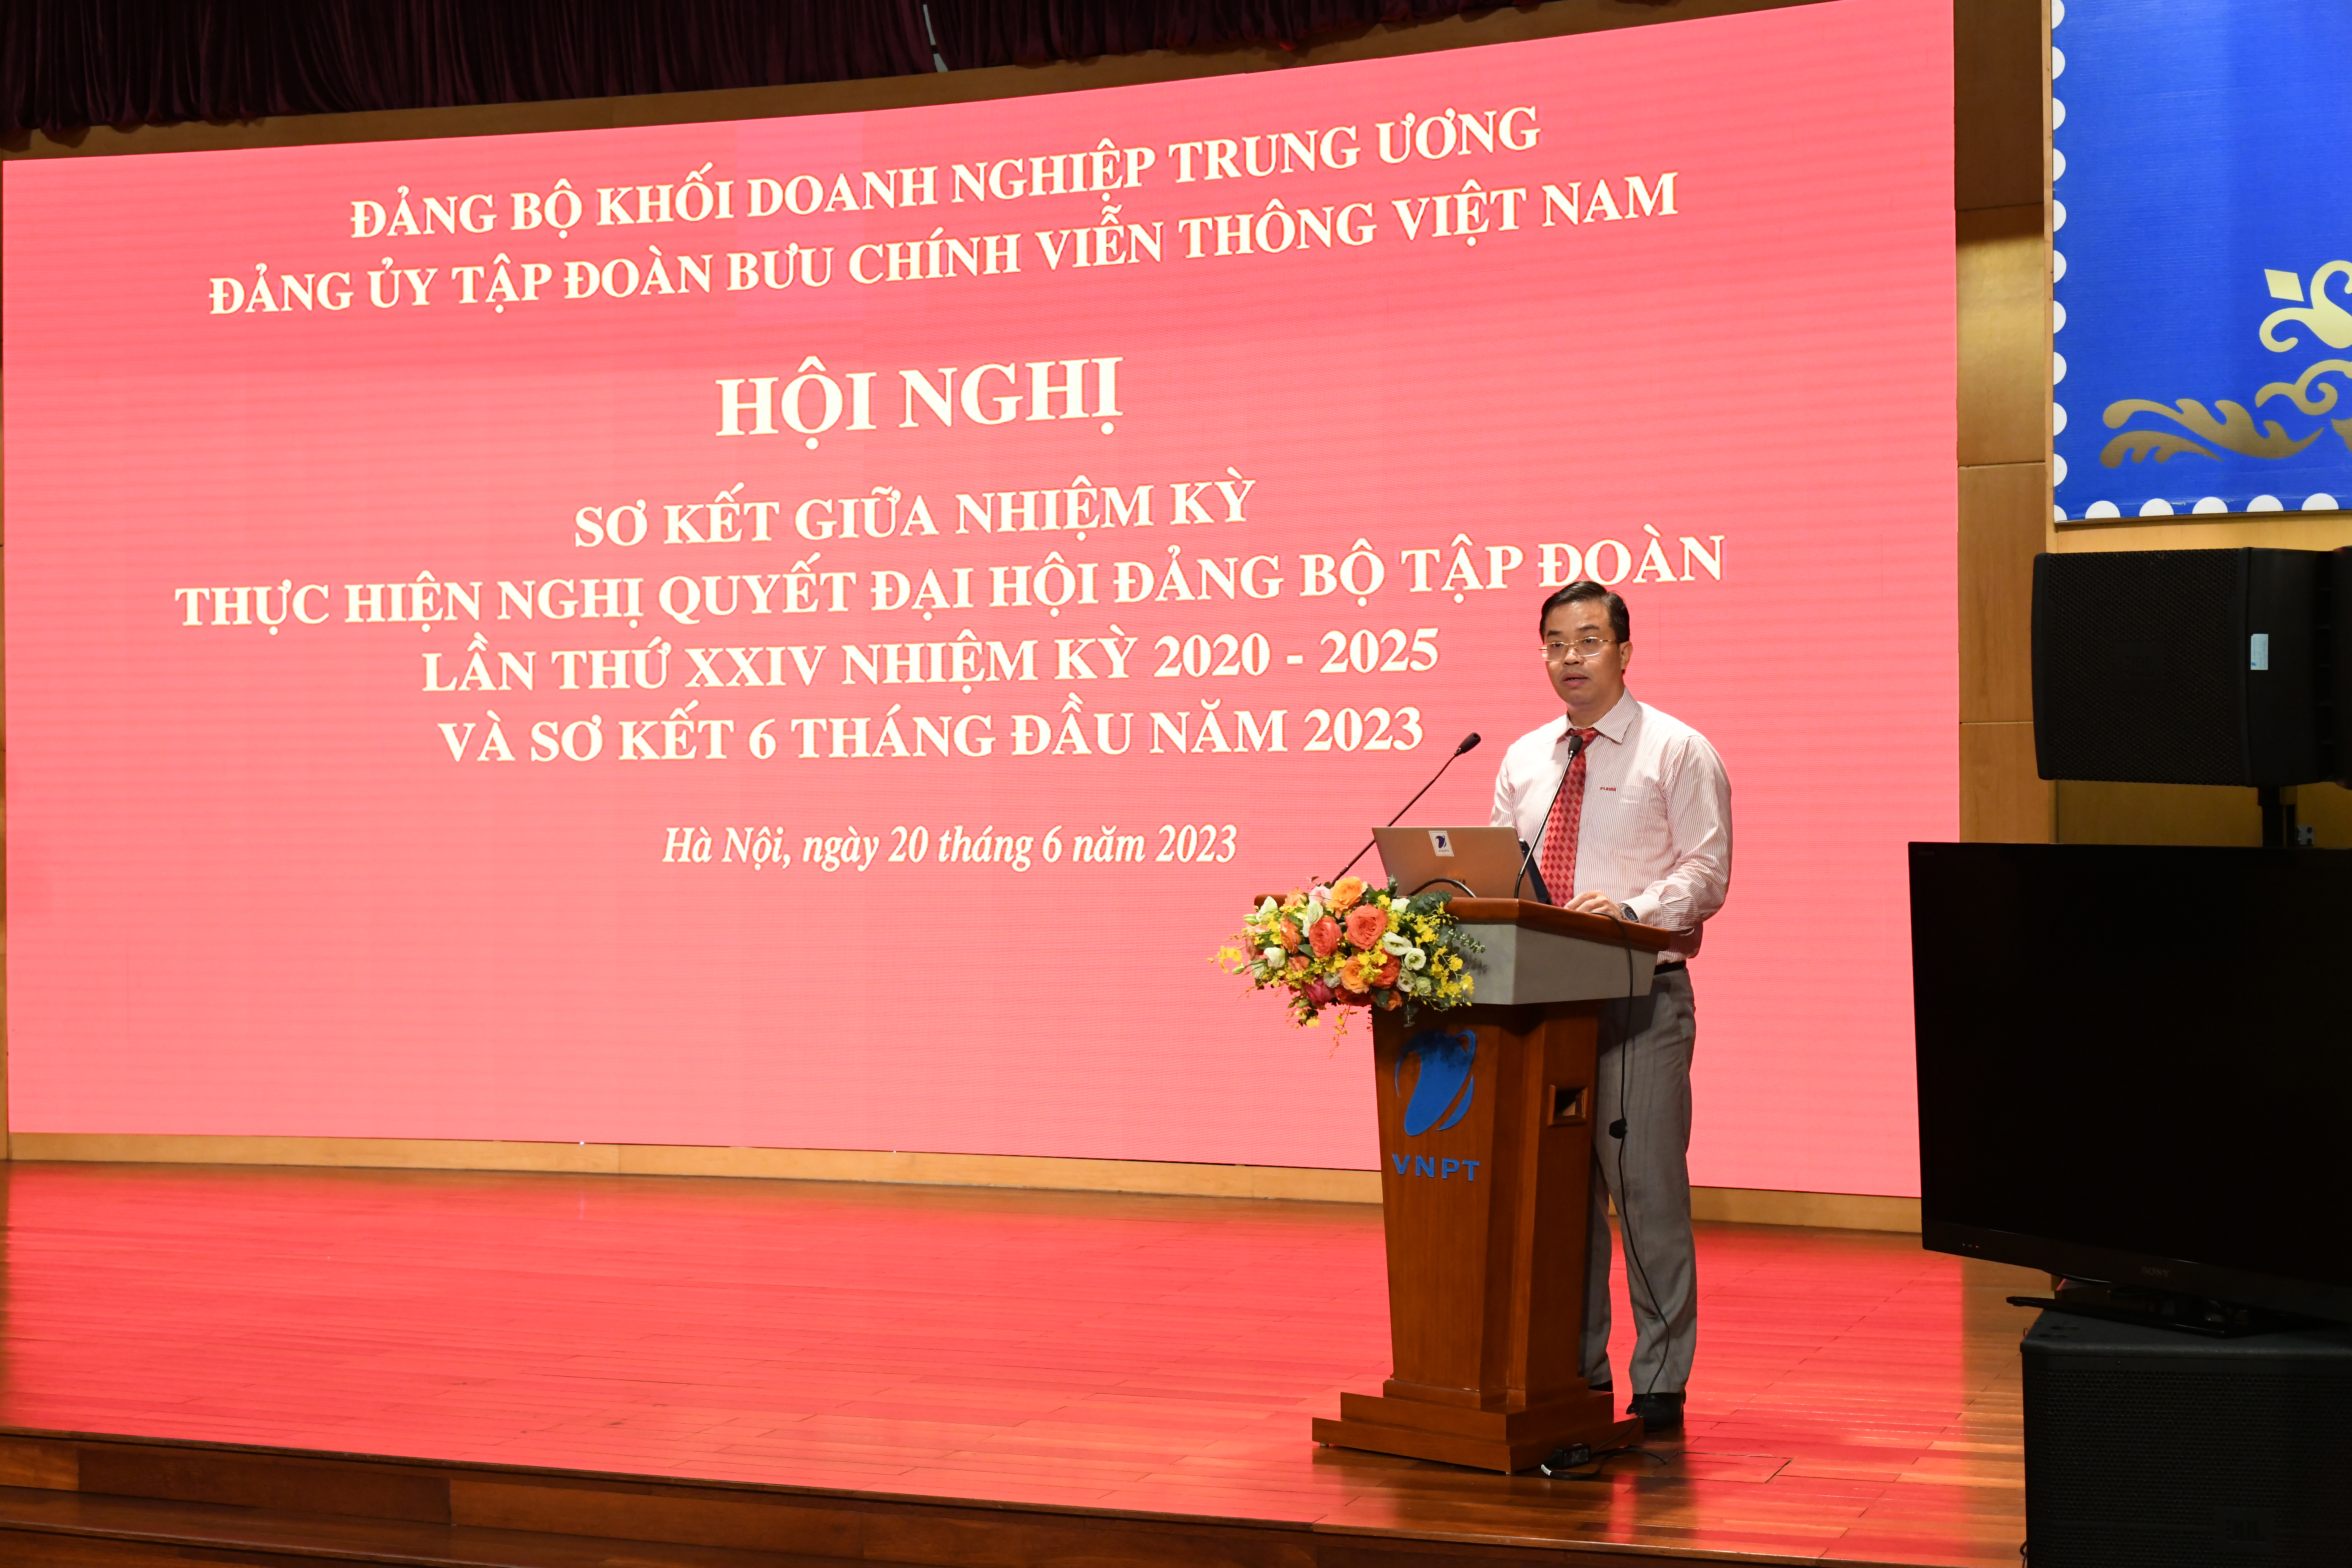 Đồng chí Nguyễn Trung Hiếu, Uỷ viên BTV, Trưởng Ban Tuyên giáo Đảng uỷ Khối Doanh nghiệp Trung ương phát biểu tại buổi thăm và tặng quà cán bộ, chiến sĩ và nhân dân đảo Song Tử Tây.